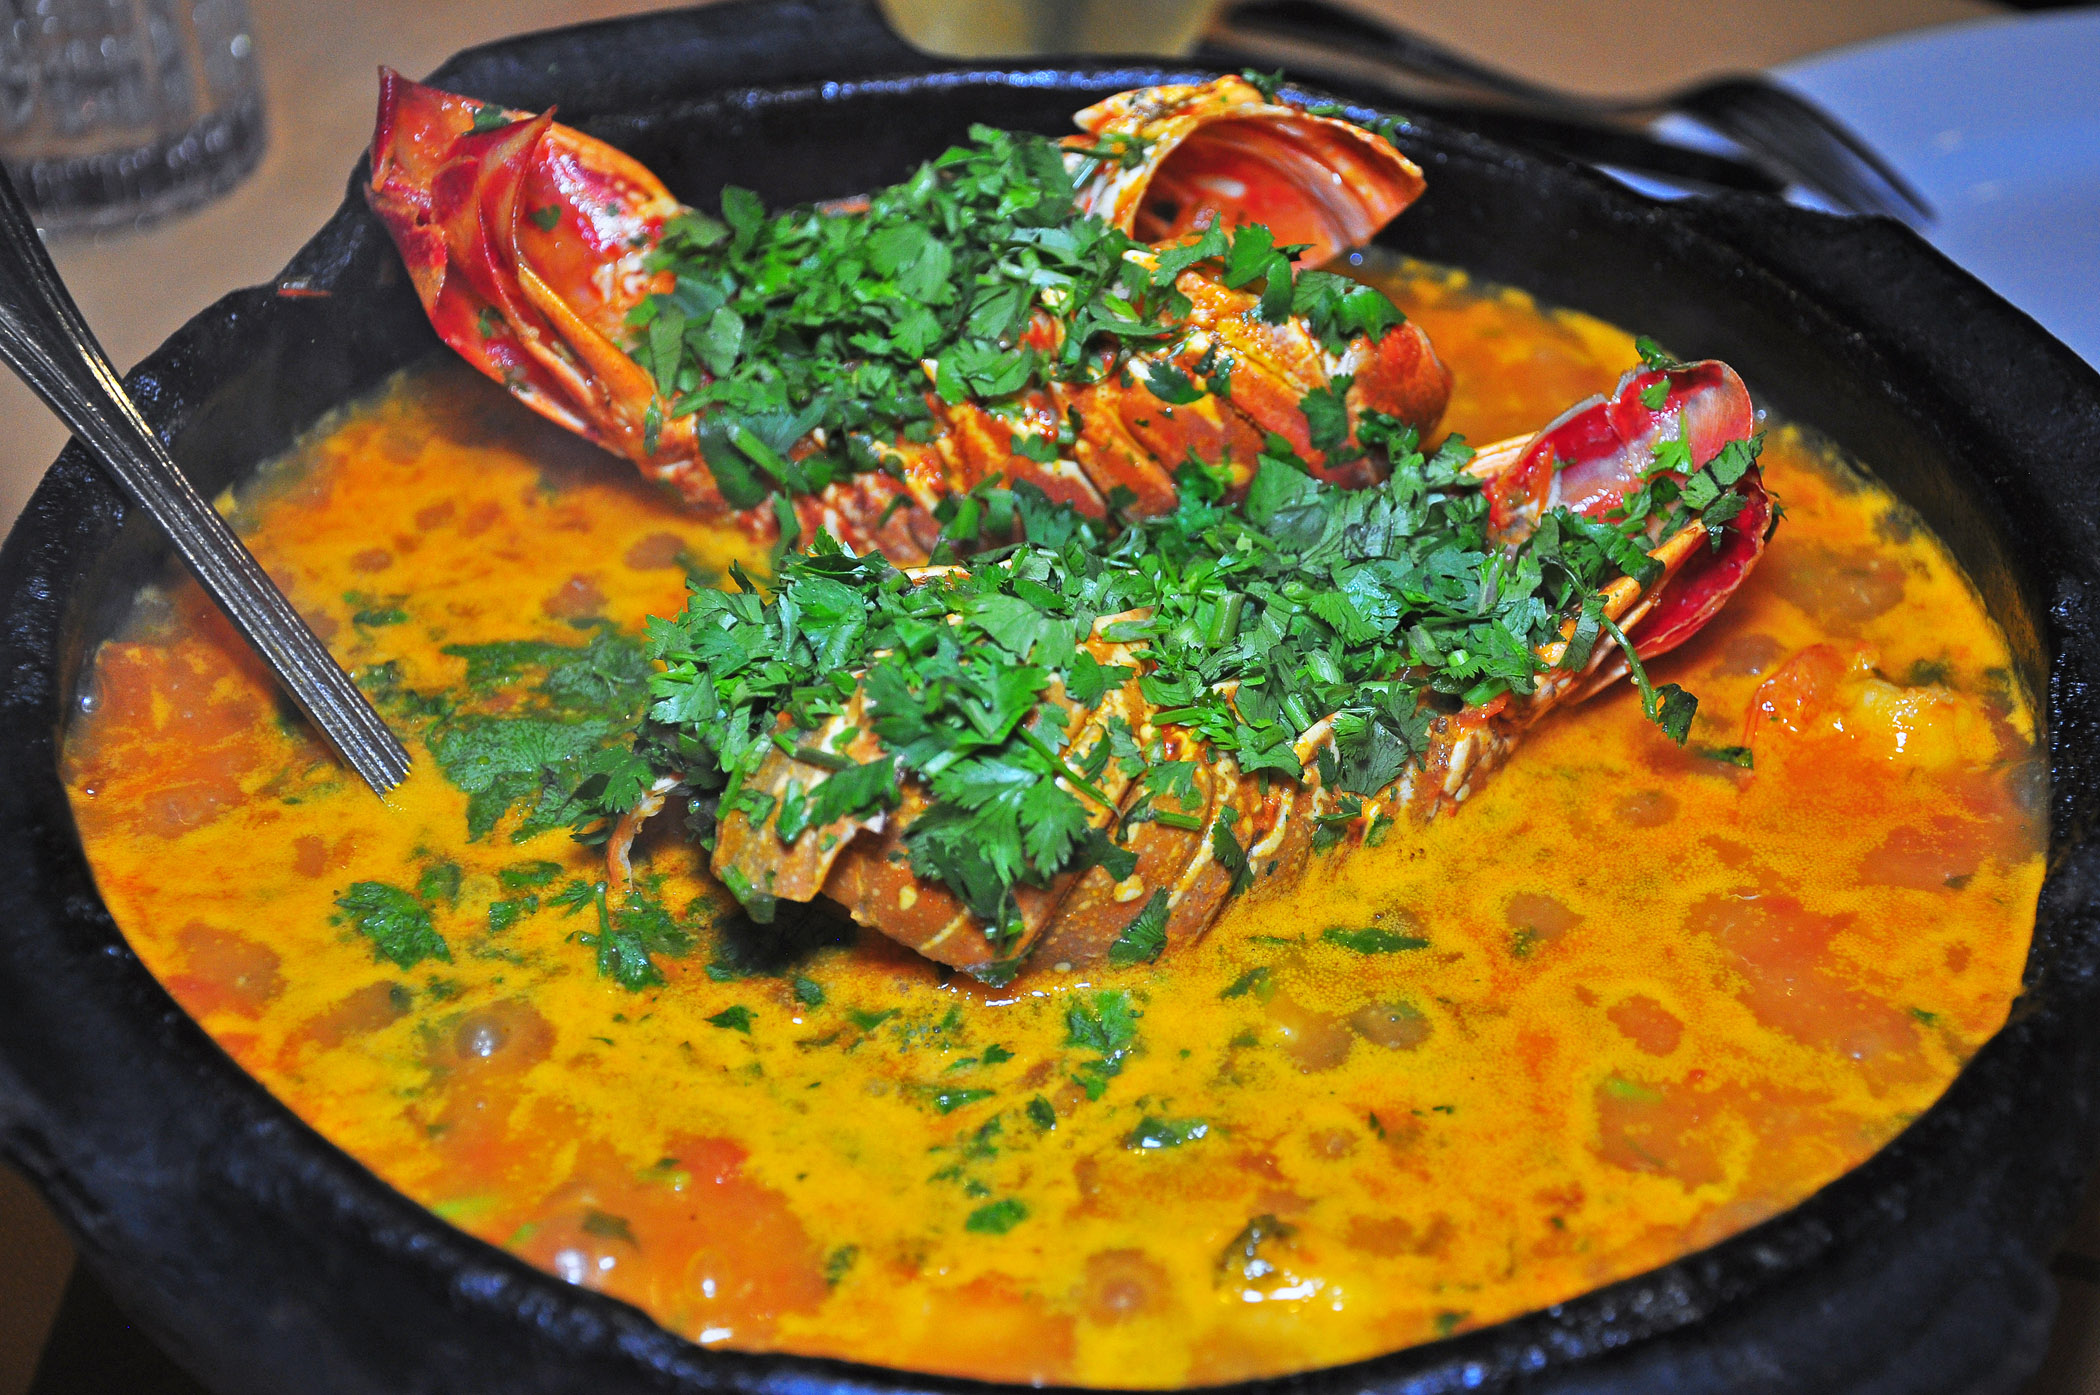 6. Moqueca seafood stew